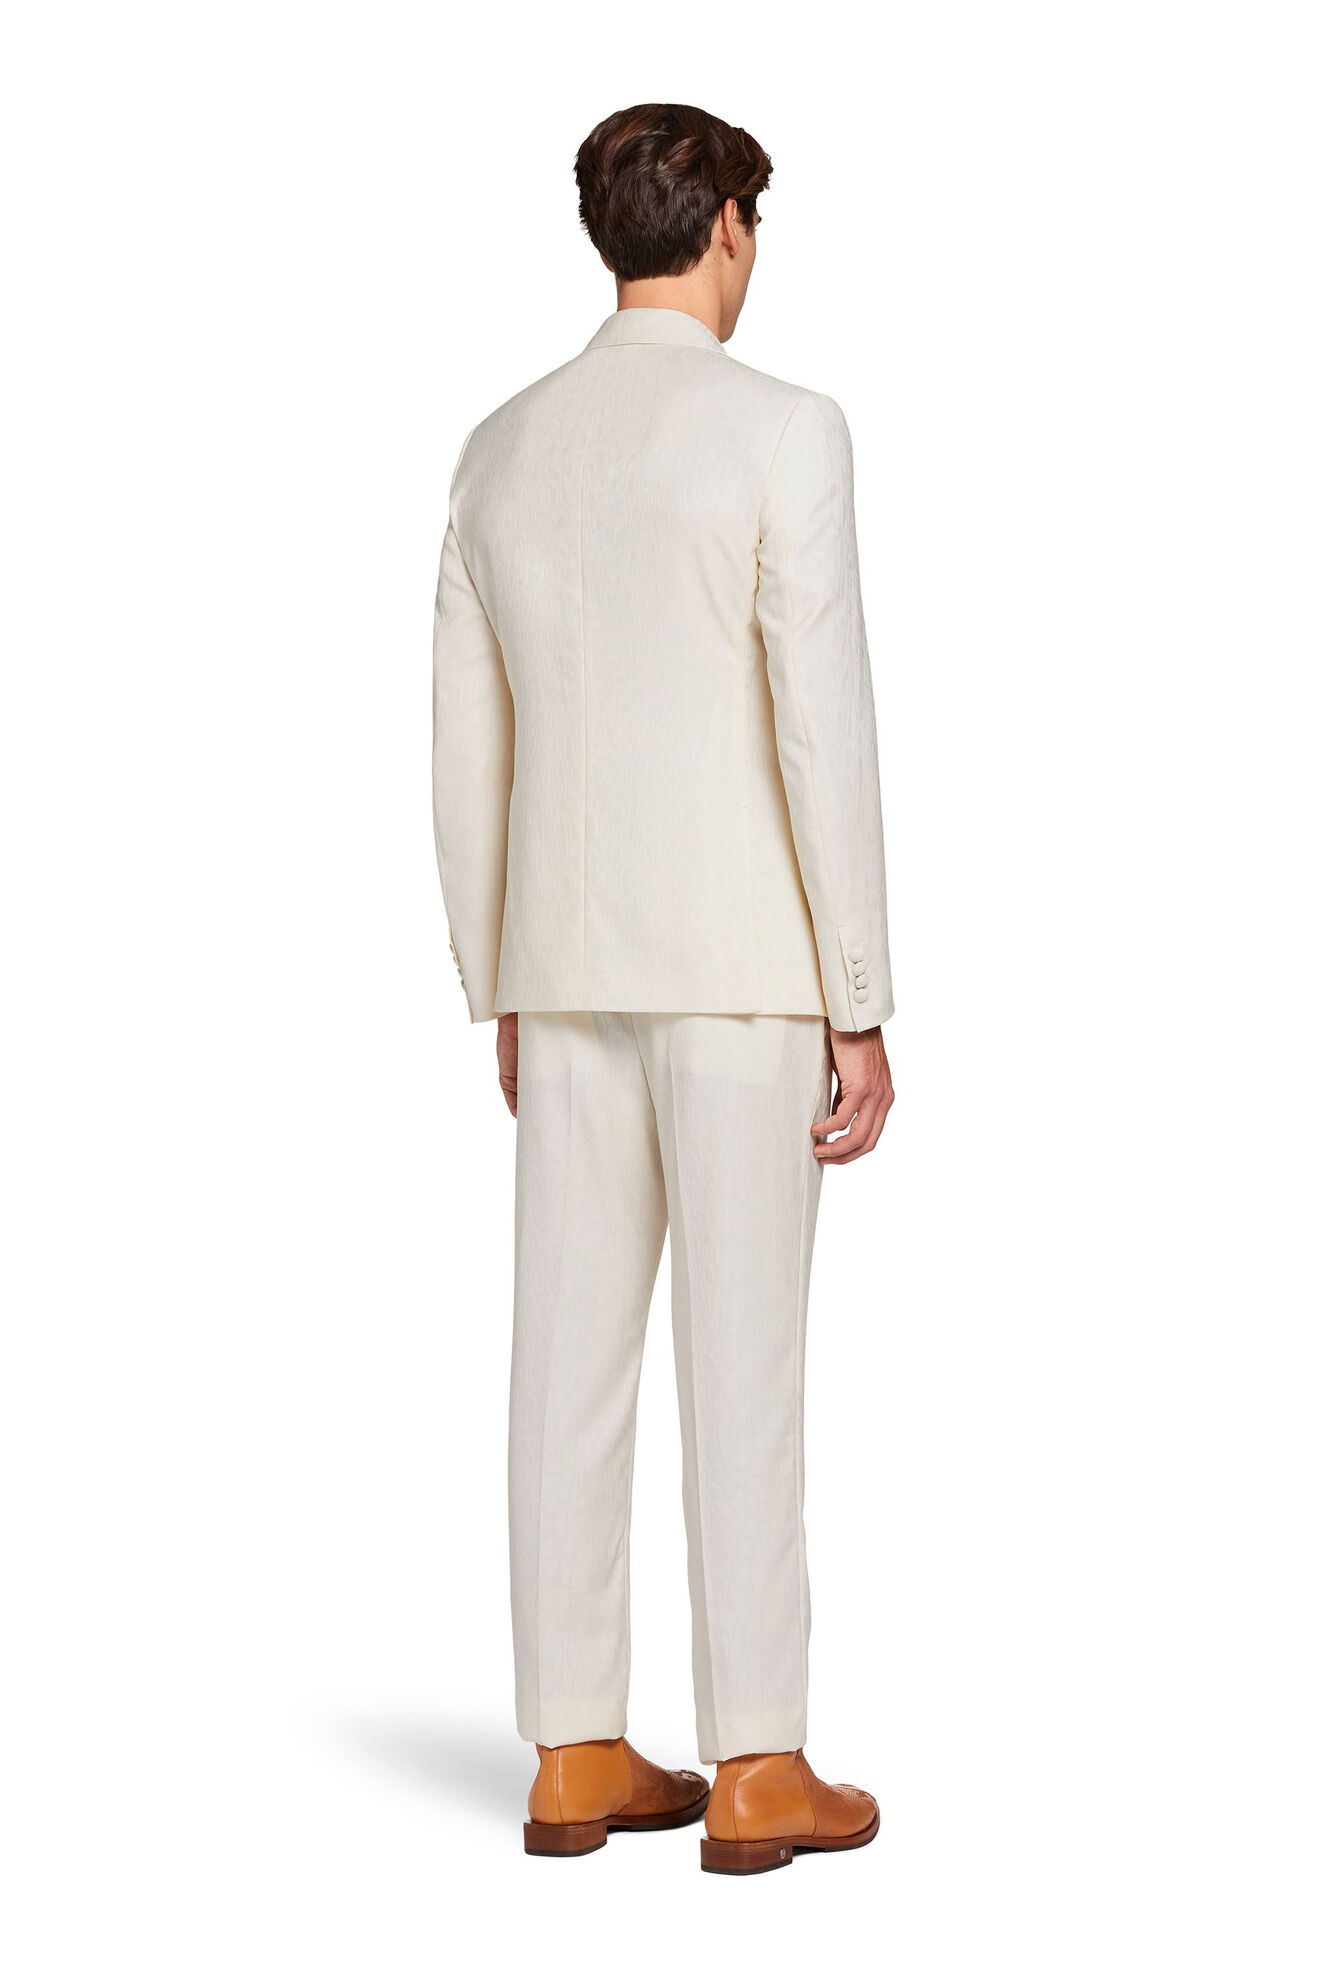 JUST CAVALLI Men's WHITE SLIP BRIEF UNDERWEAR Size XL Authentic Cotton NWD  New